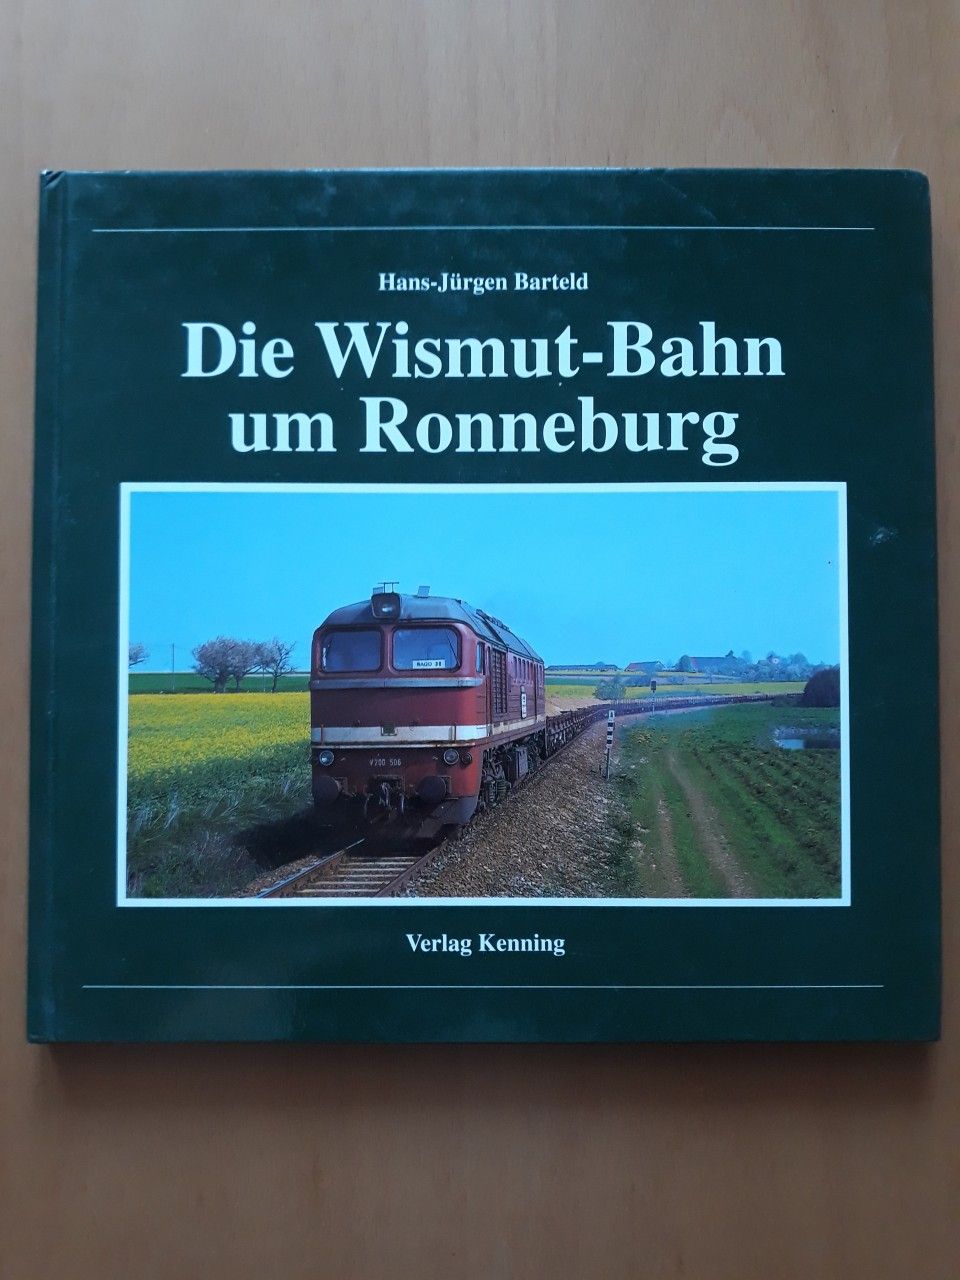 Die Wismut-Bahn um Ronneburg - Hans-Jurgen Barteld 1999